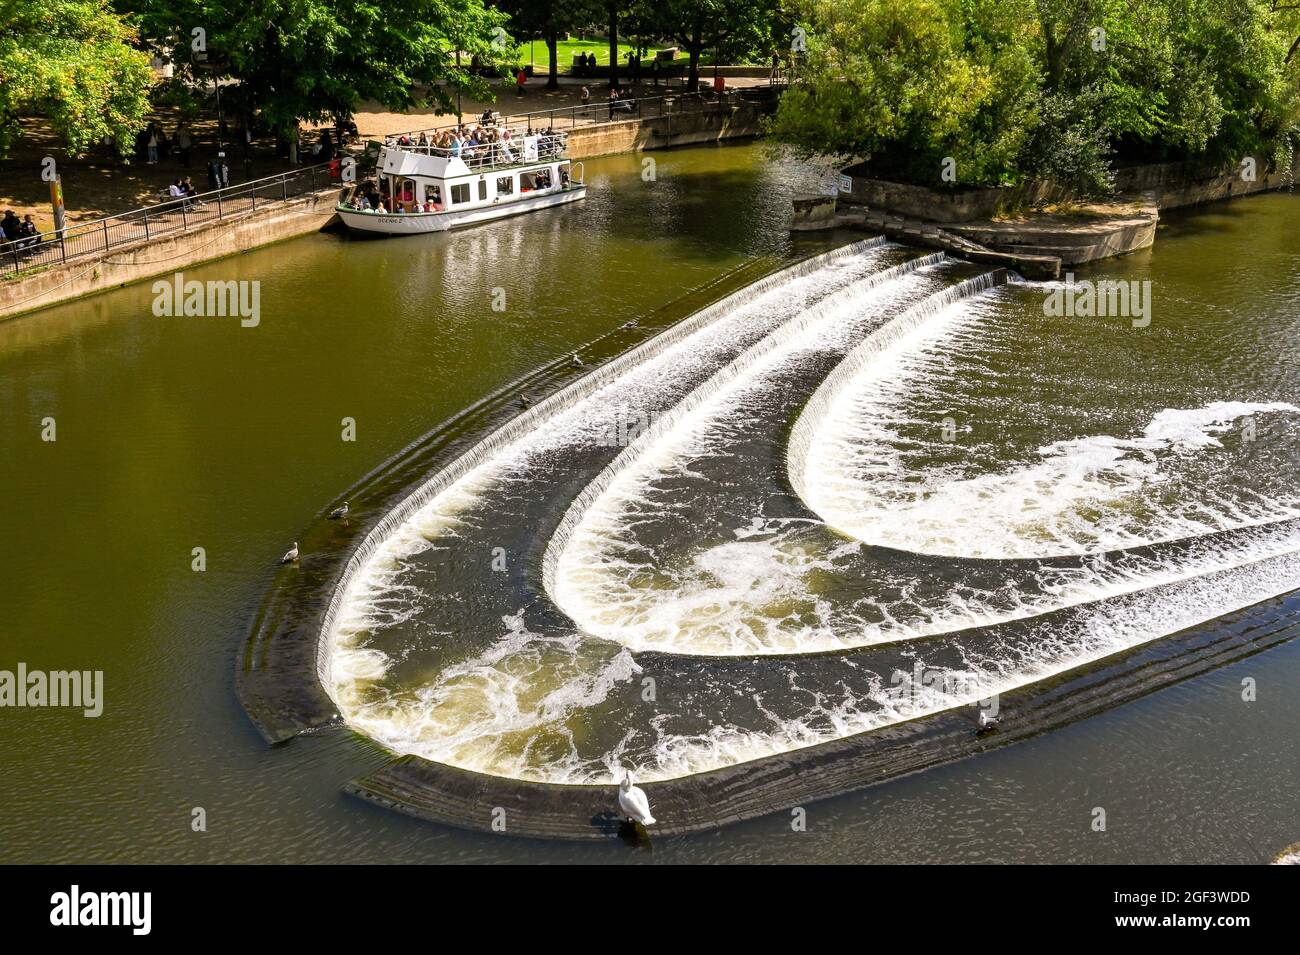 Bath, Inglaterra - 2021 de agosto: Weir en forma de herradura en el puente Pultney en el centro de Bath. En el fondo es un barco turístico Foto de stock